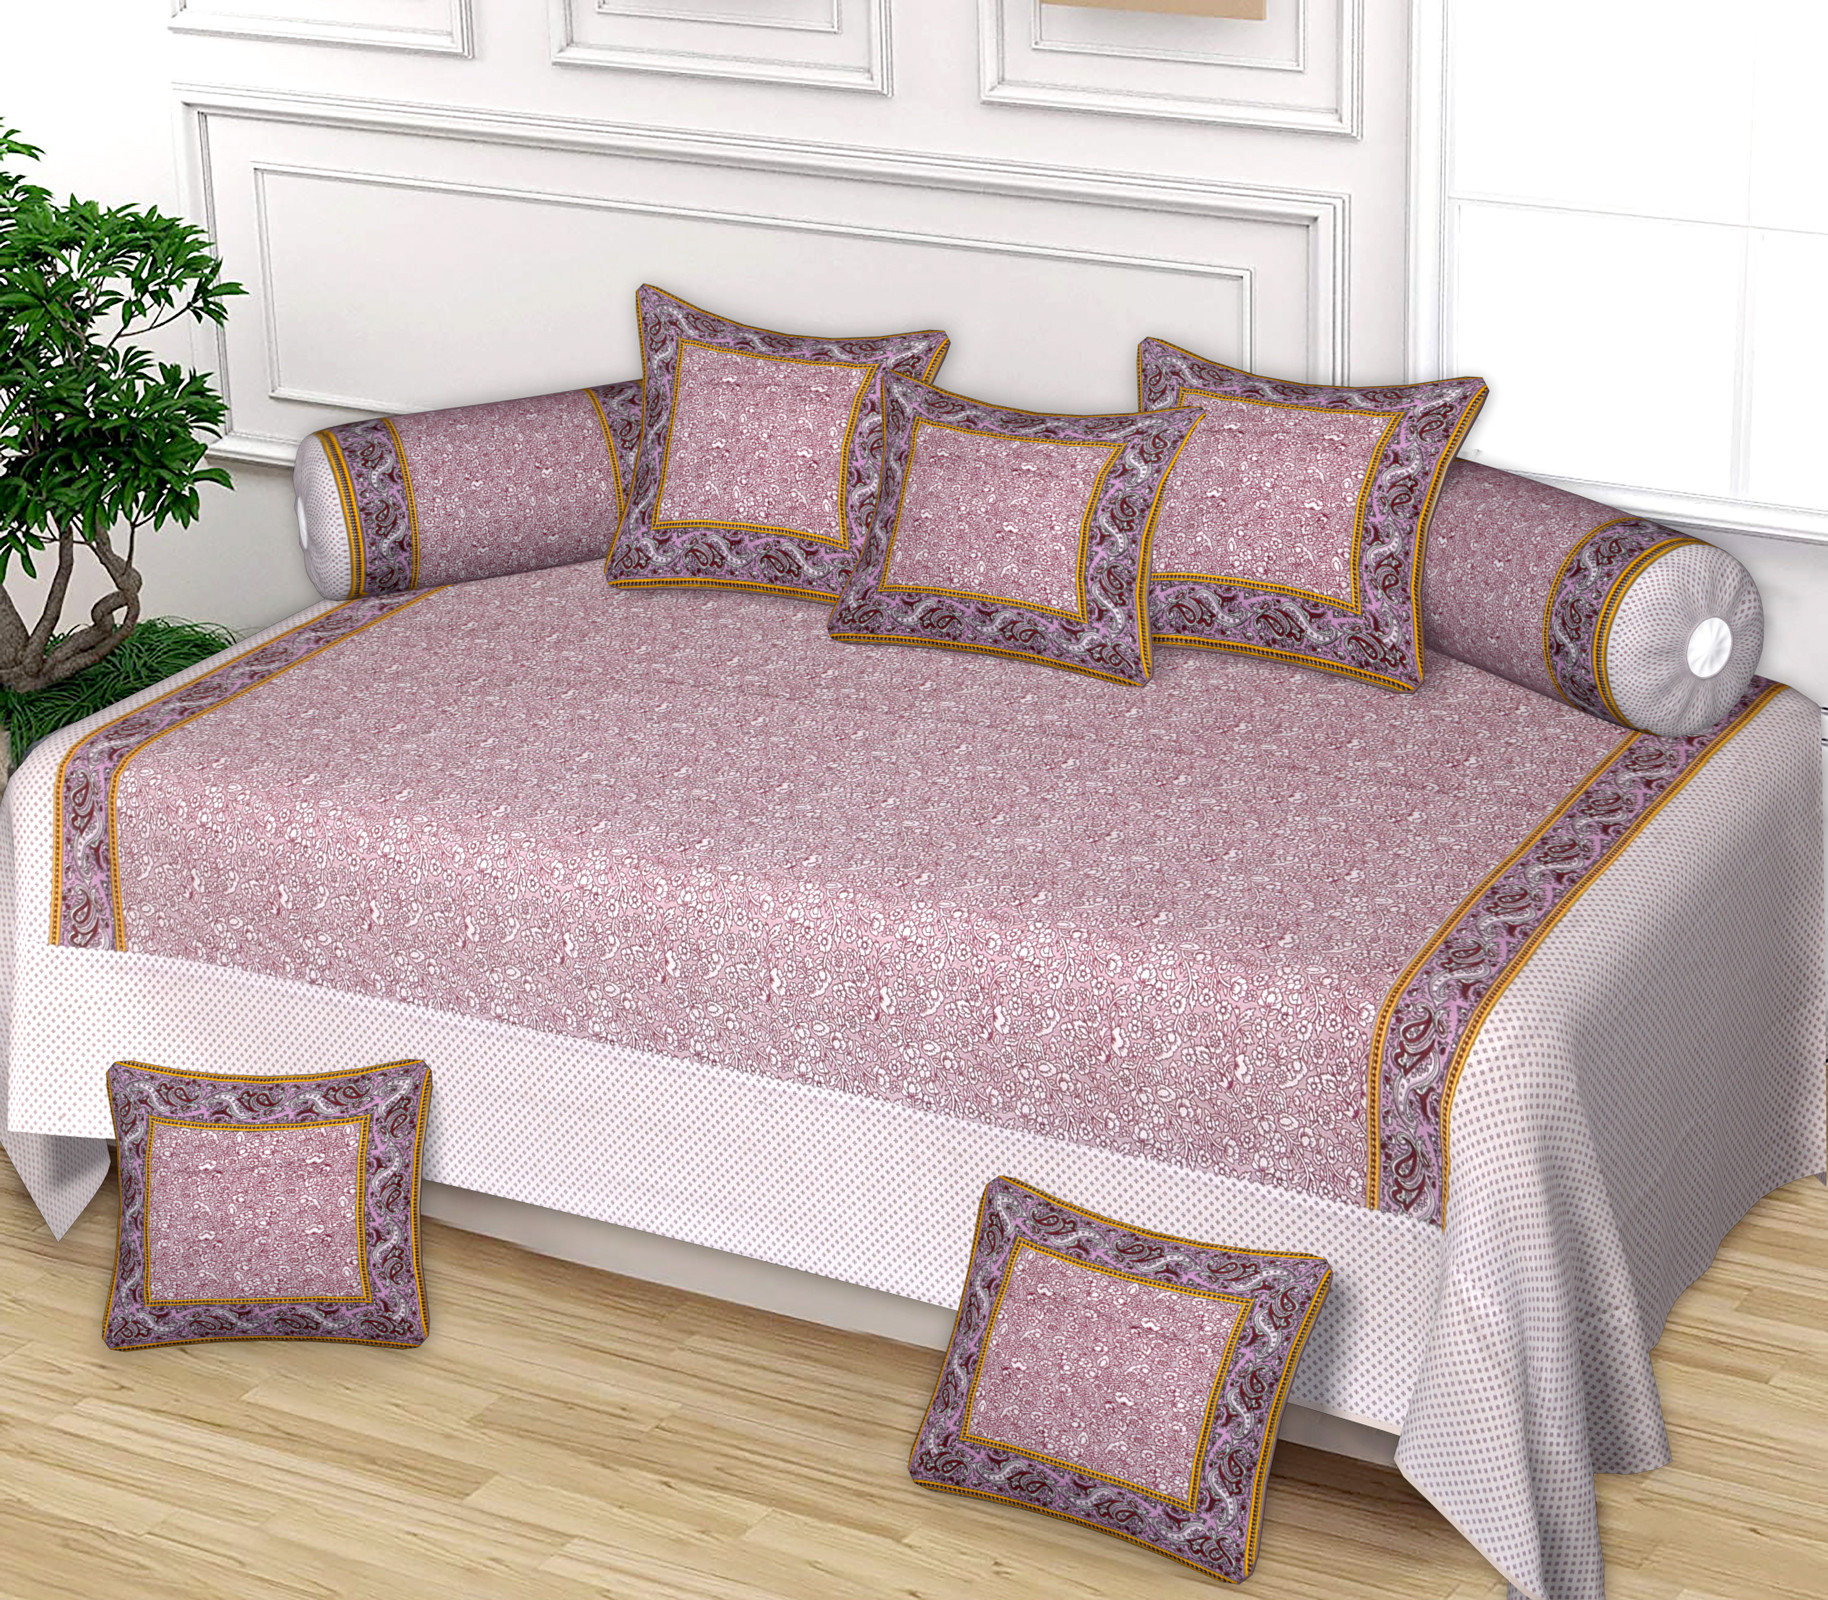 Kuber Industries Flower Design Cotton Diwan Set With 8 Pieces (Pink)-HS_38_KUBMART21137